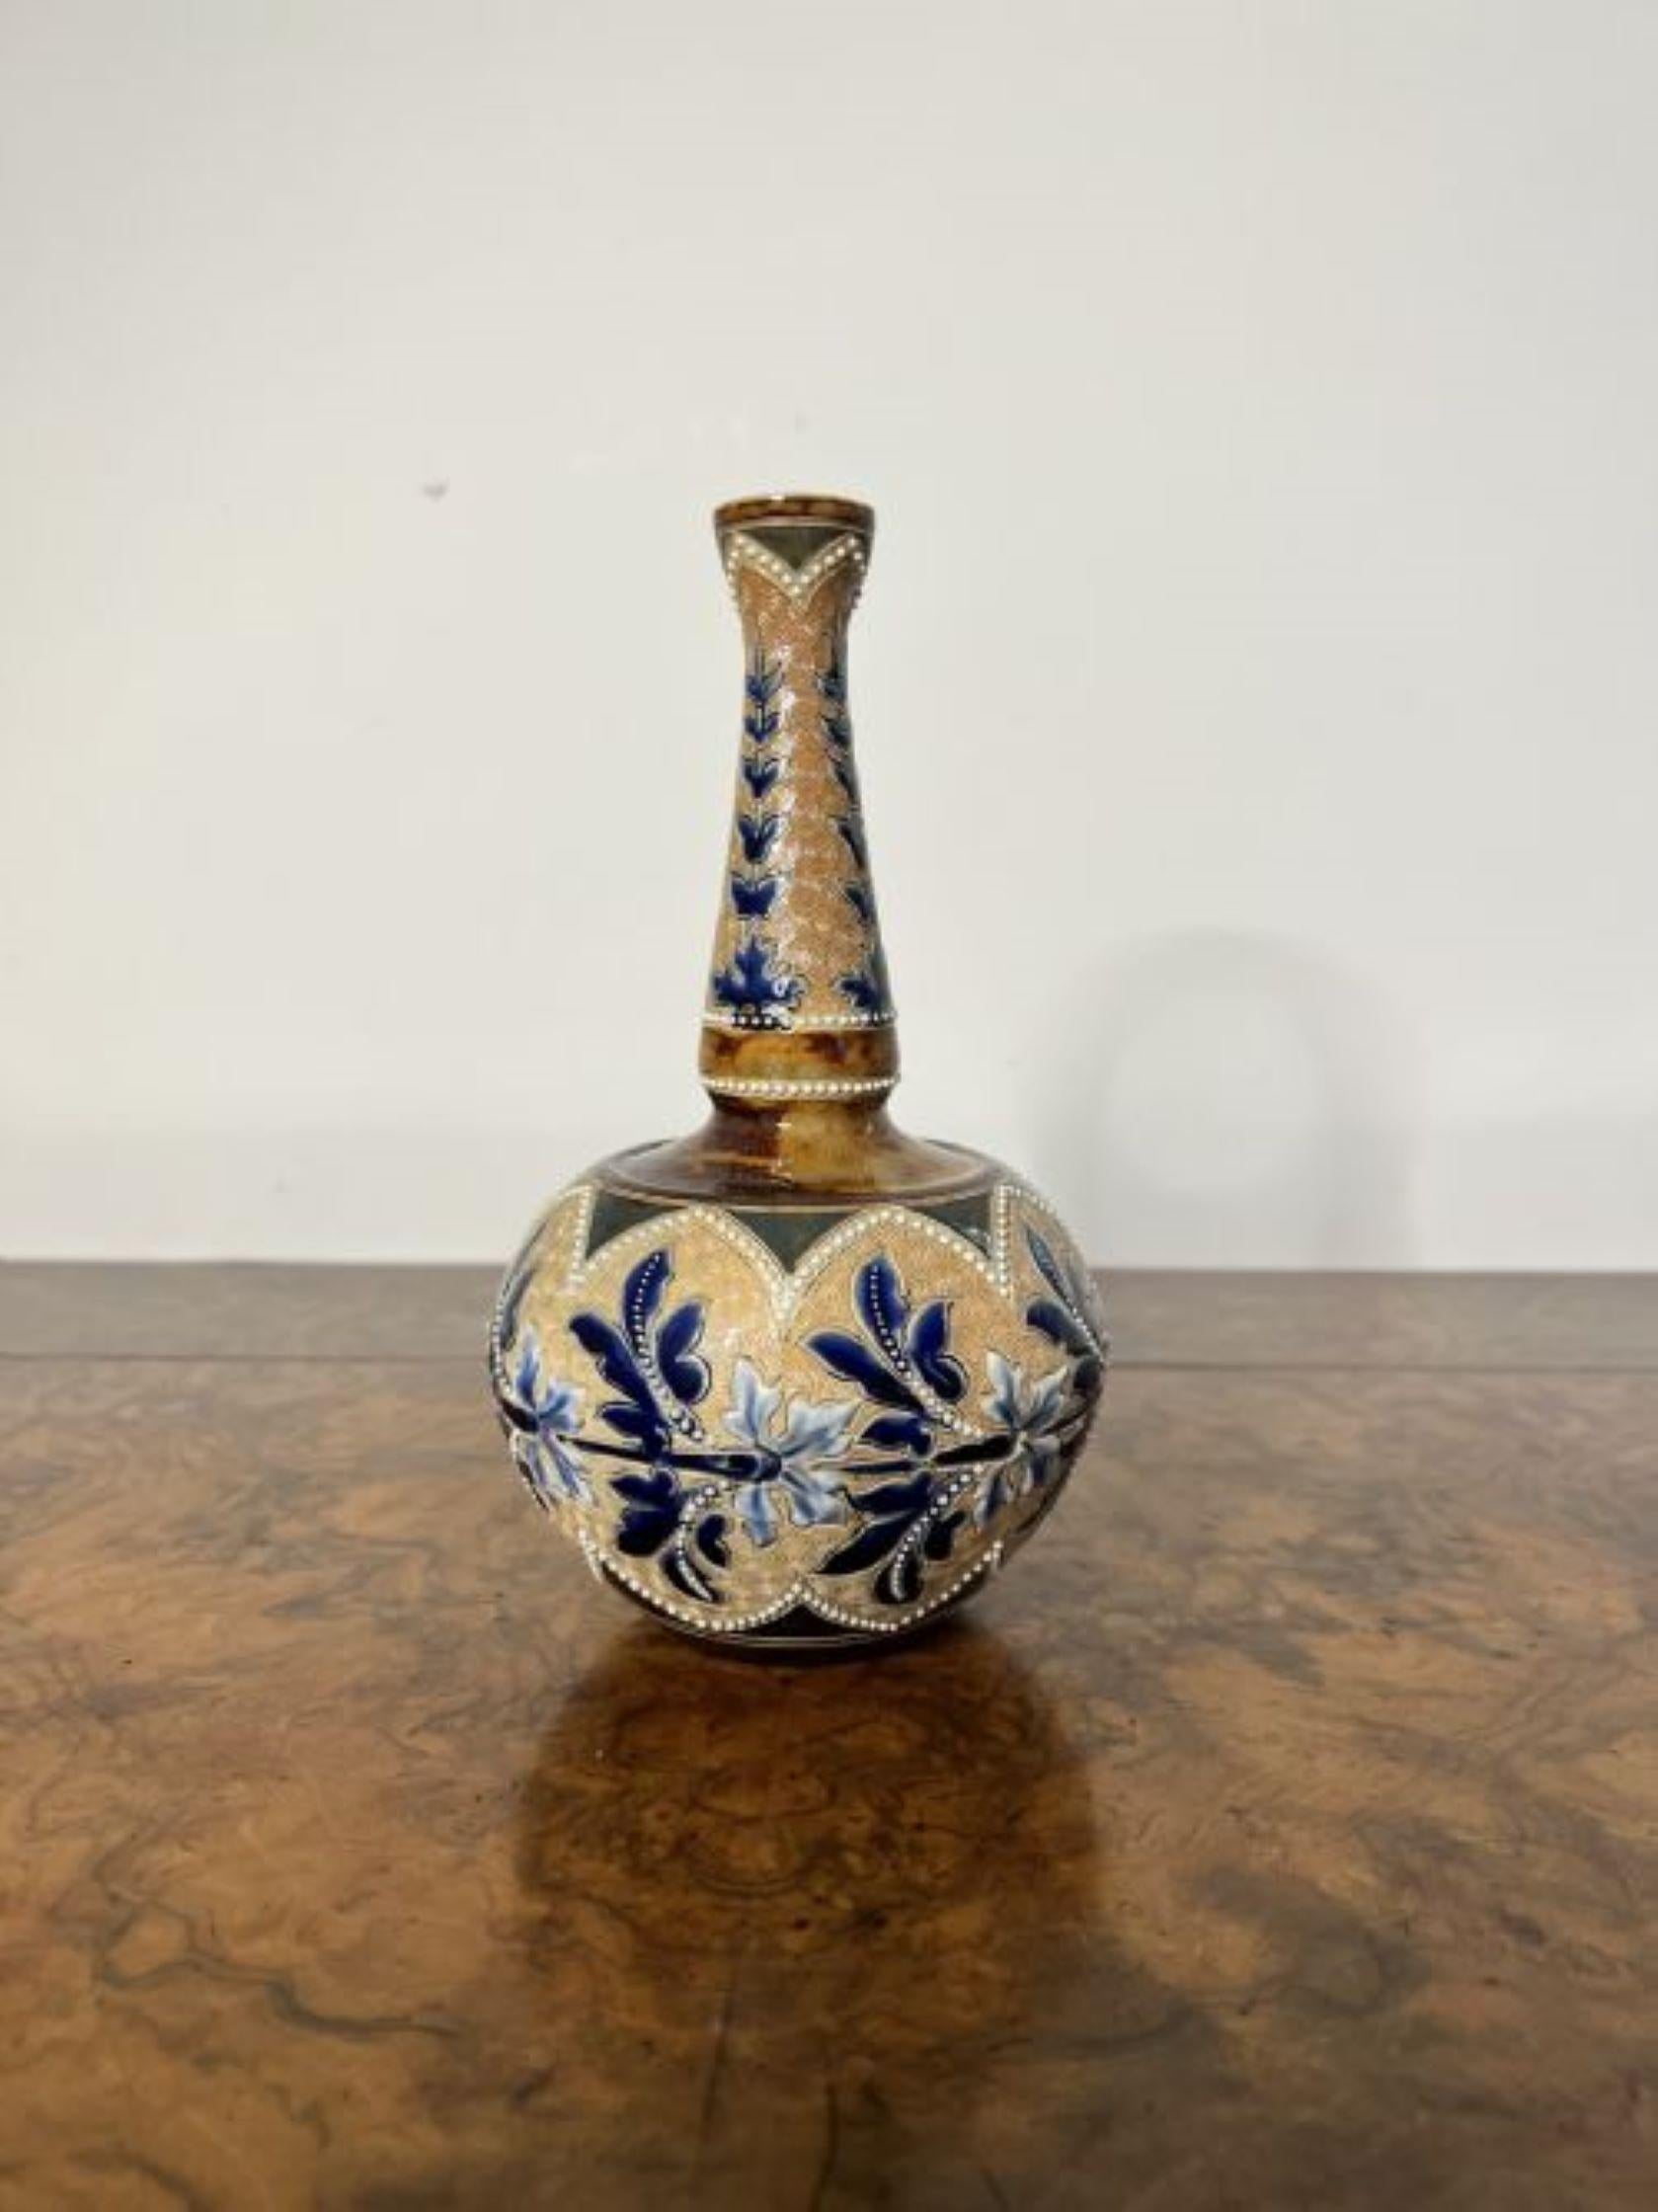 Fantastique vase antique Doulton Lambeth de qualité, ce vase antique Doulton Lambeth réalisé pour l'Art Union de Londres par Emily Stormer a un corps bulbeux avec un col haut et mince avec une fantastique décoration florale dans de merveilleuses